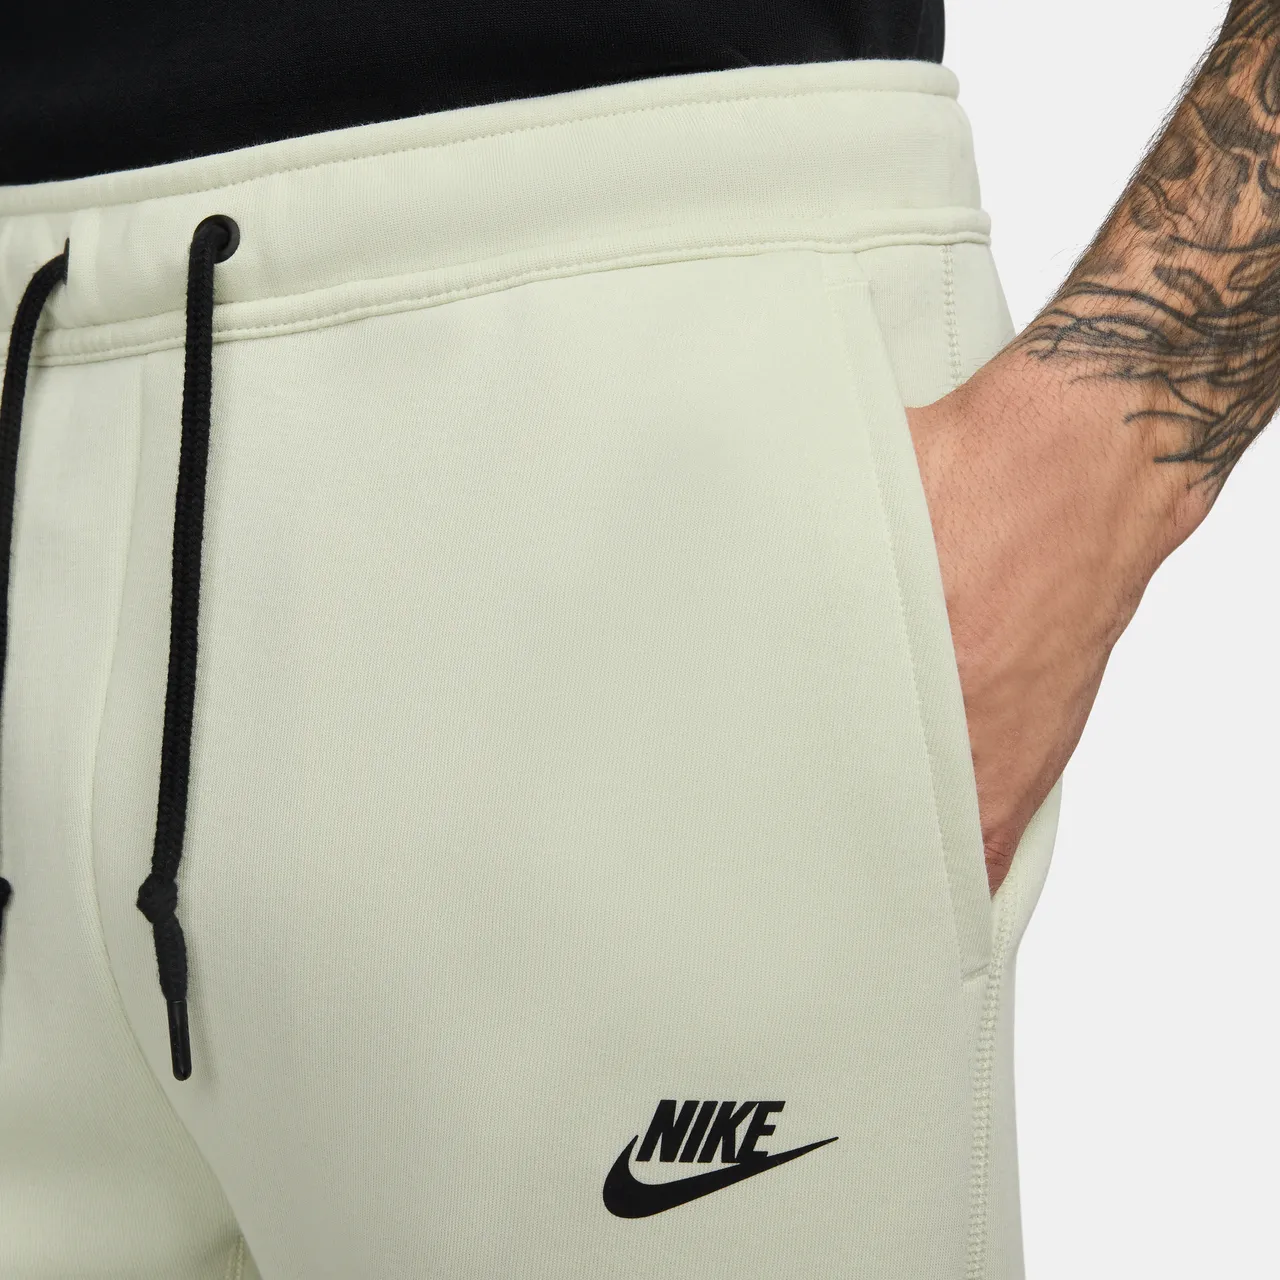 Nike Sportswear Tech Fleece Men's Joggers - Green - Cotton